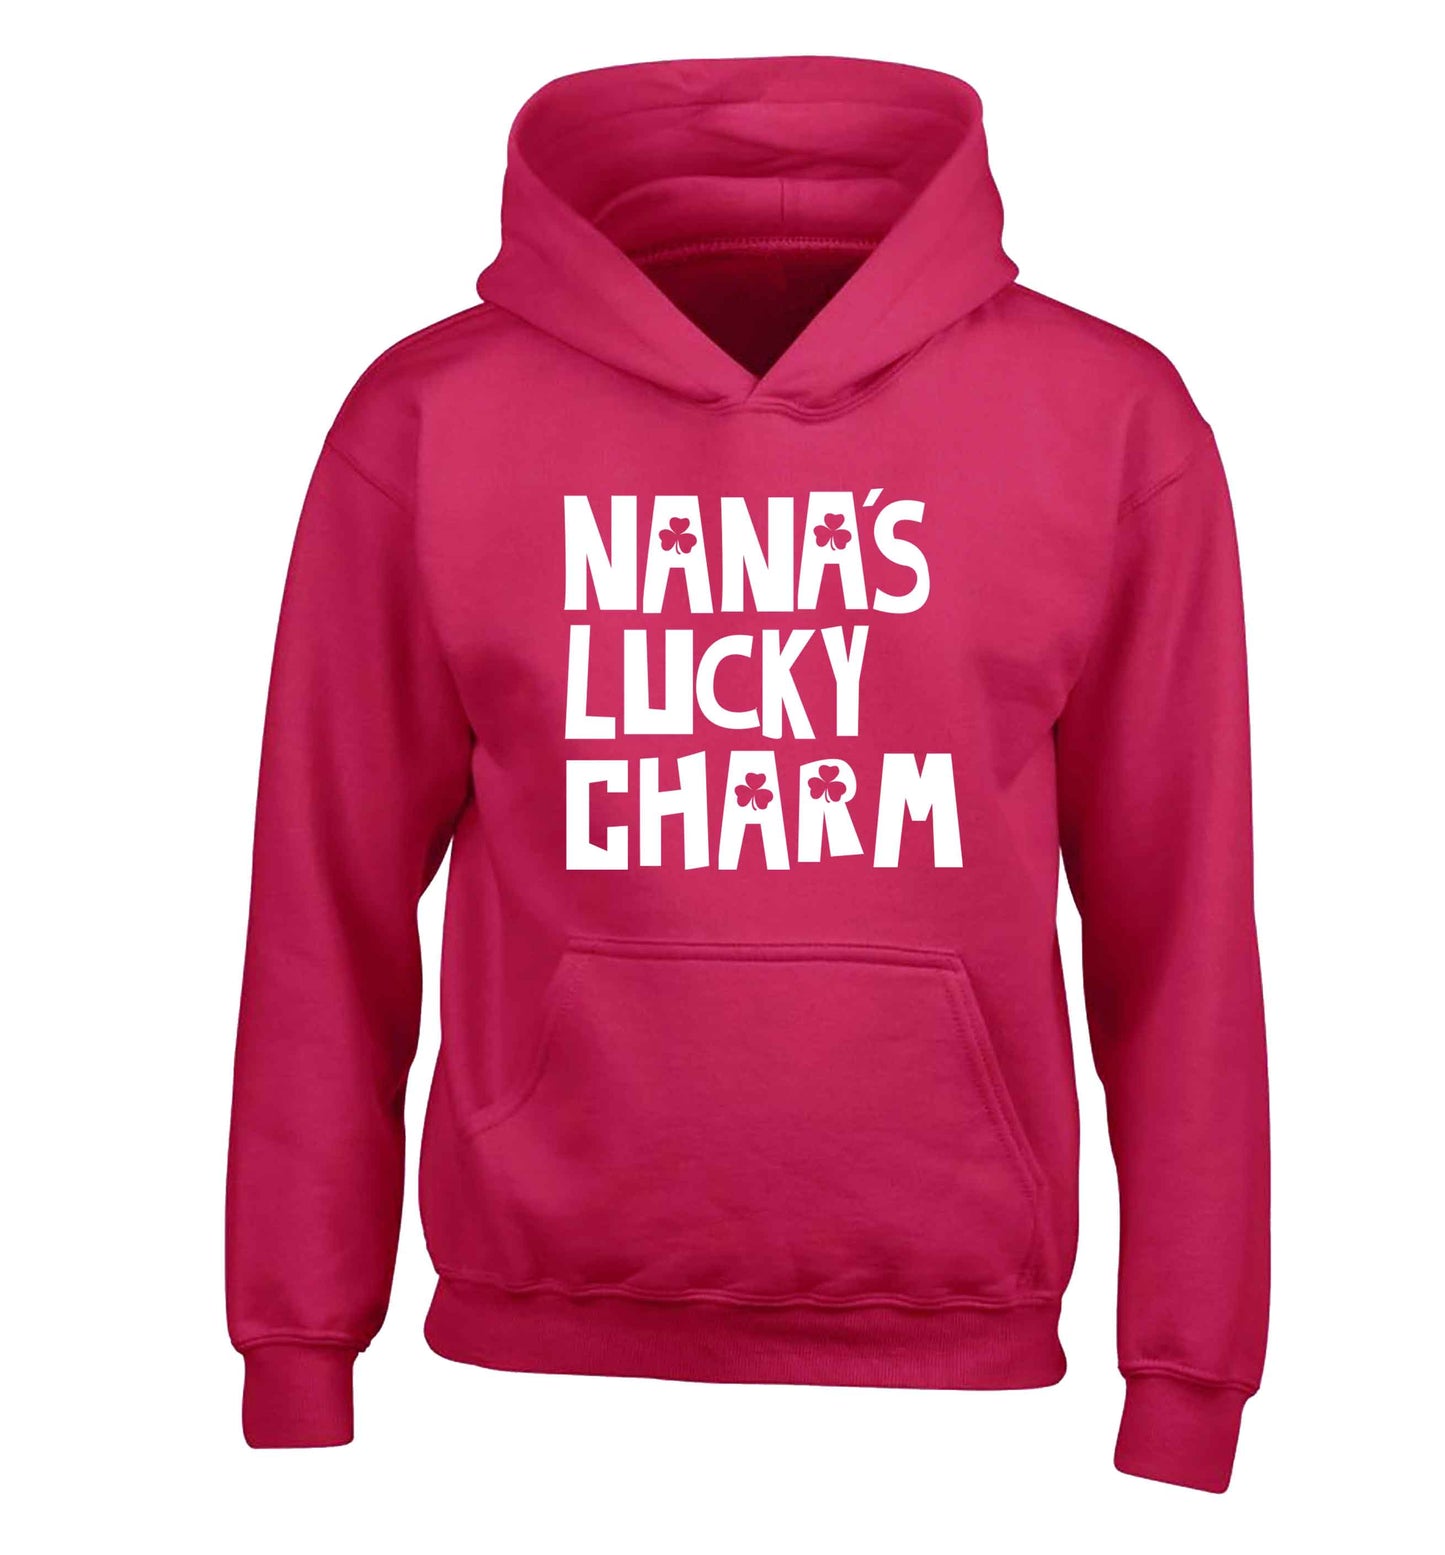 Nana's lucky charm children's pink hoodie 12-13 Years